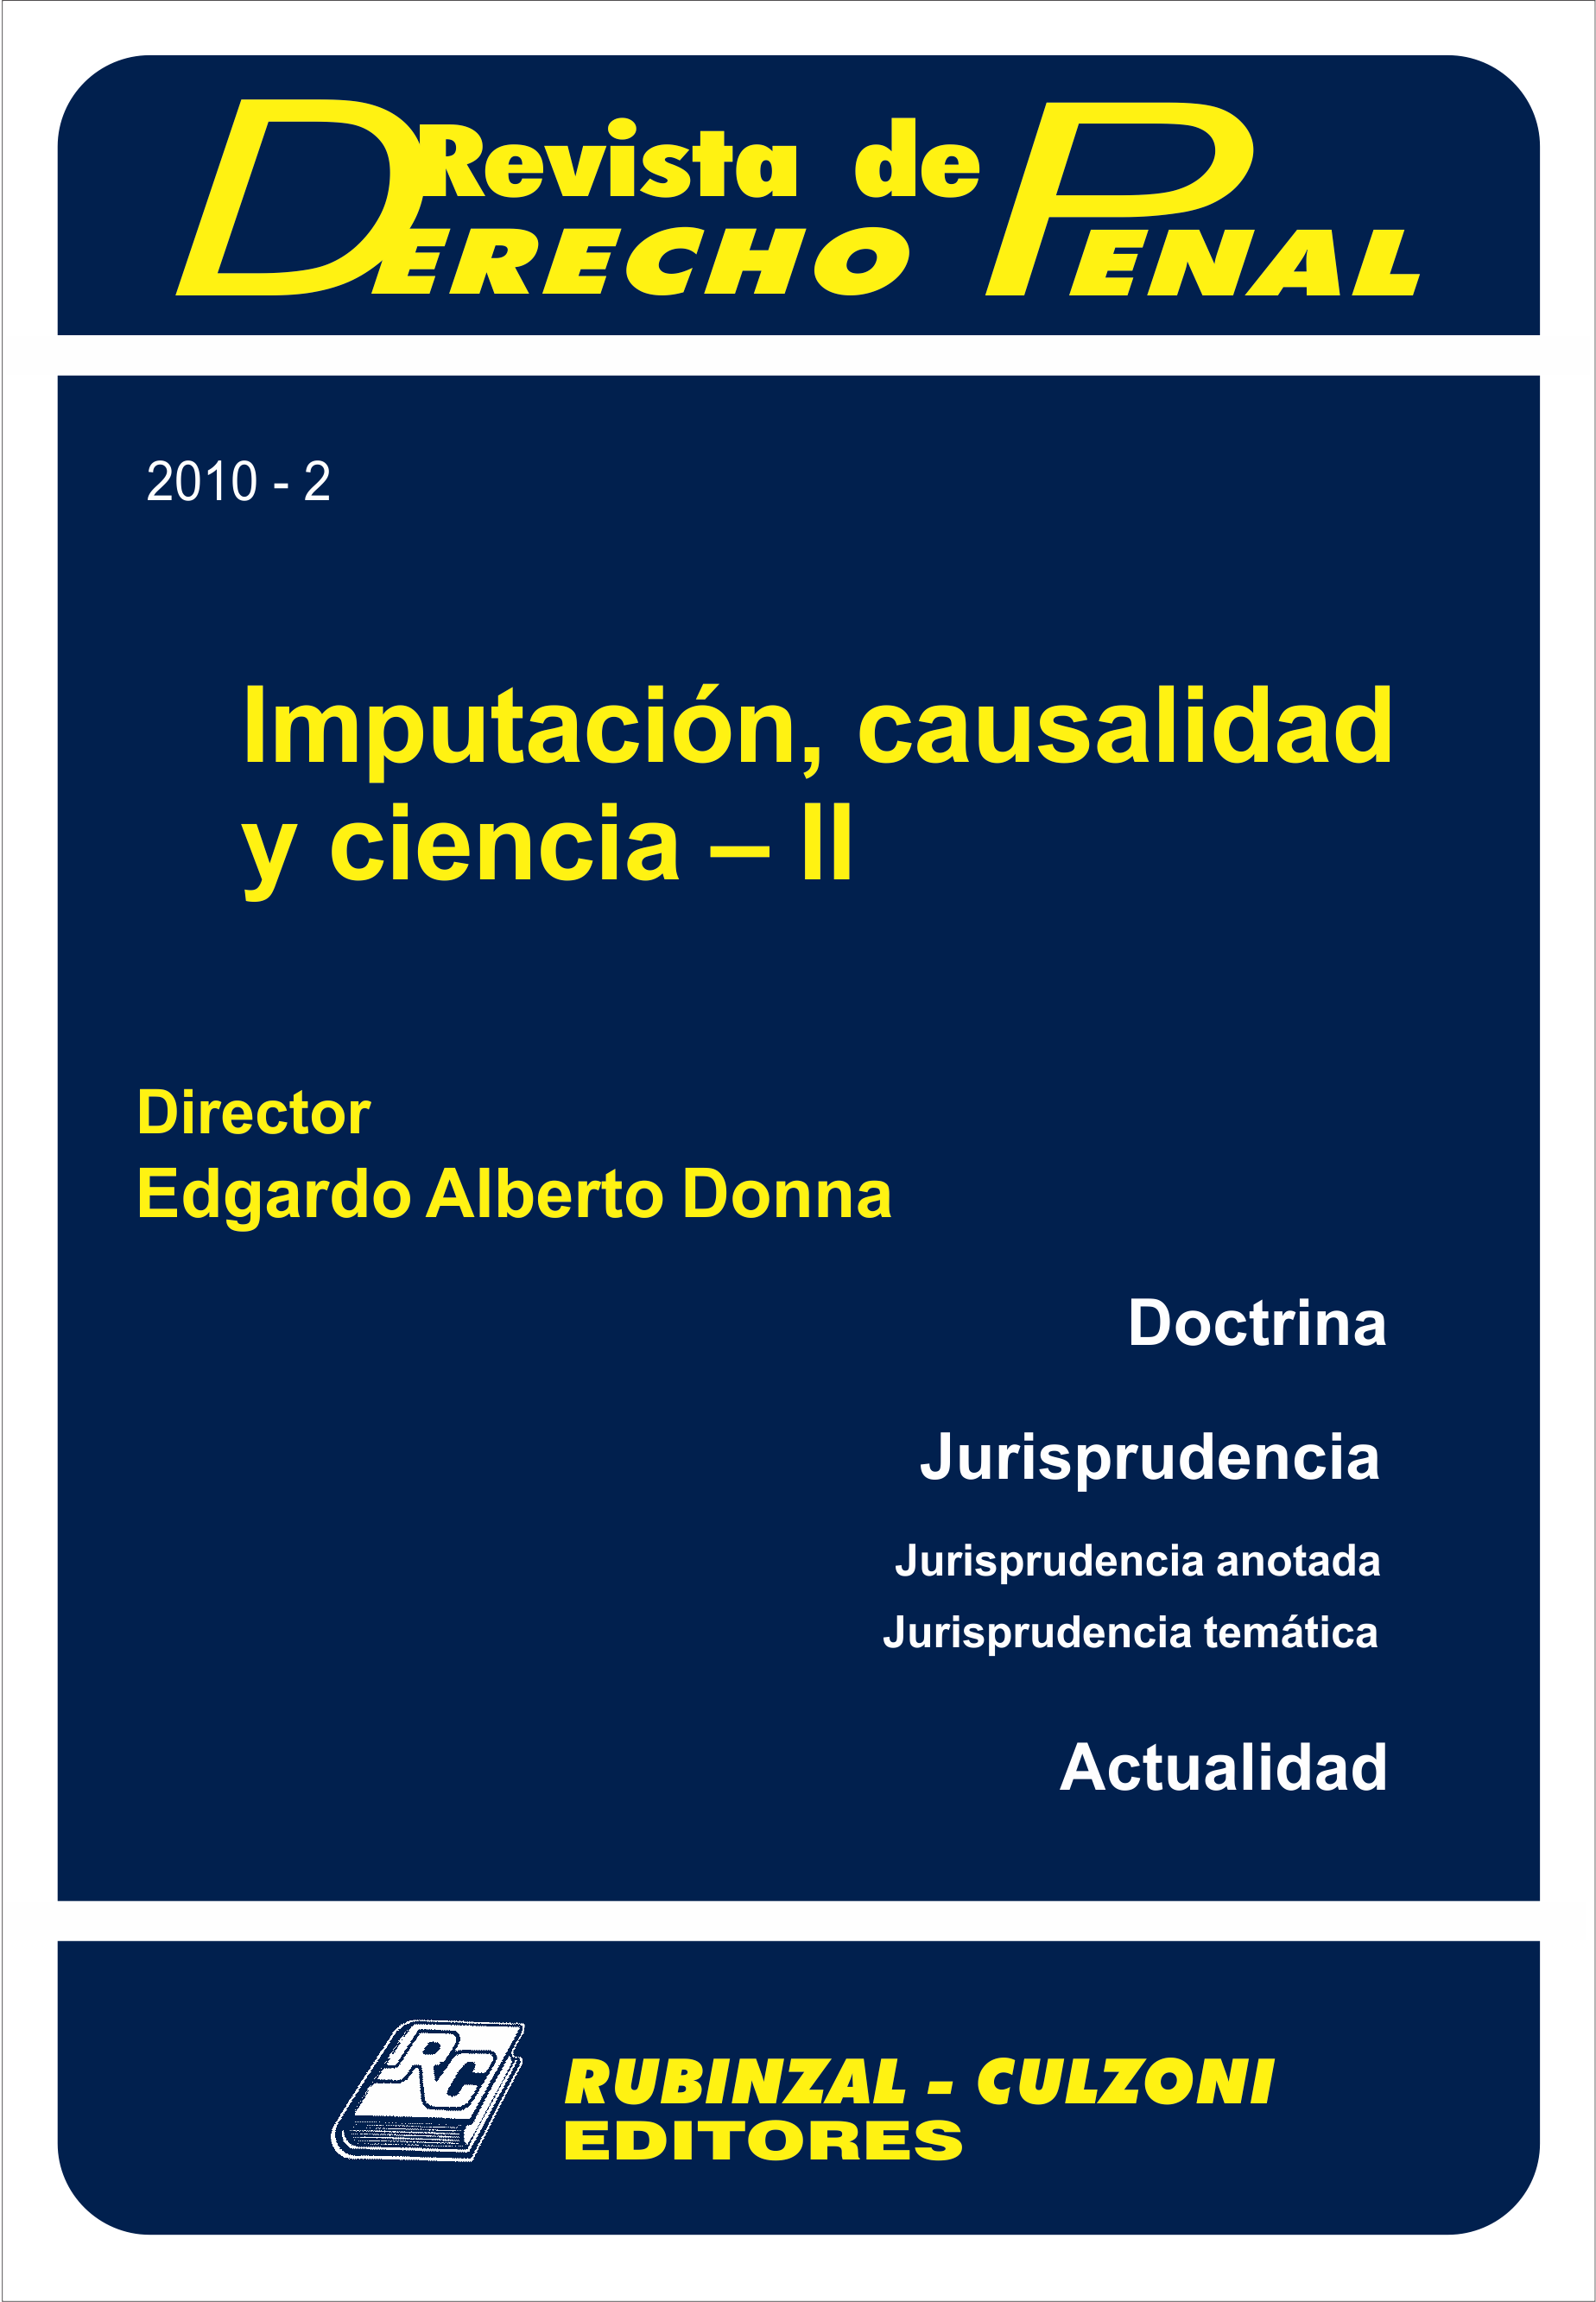 Revista de Derecho Penal - Imputación, causalidad y ciencia - II.